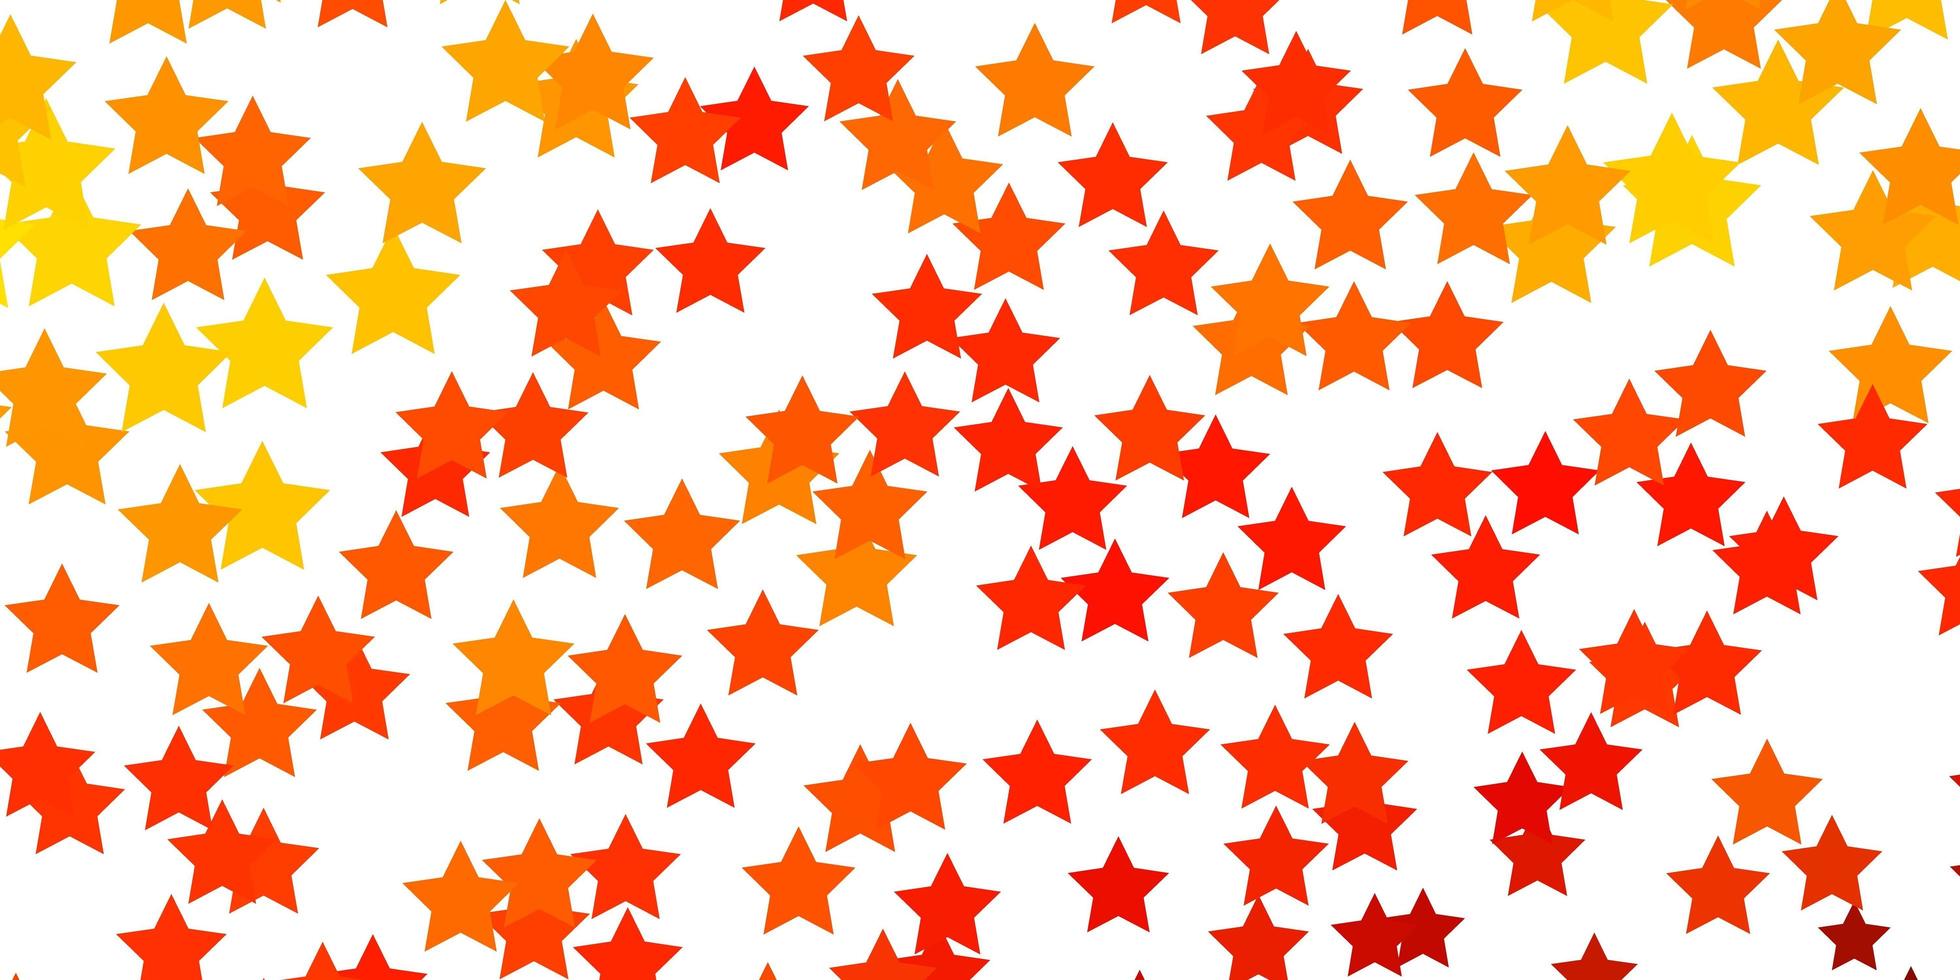 fundo laranja claro do vetor com estrelas pequenas e grandes. ilustração colorida em estilo abstrato com estrelas gradientes. design para a promoção de seus negócios.